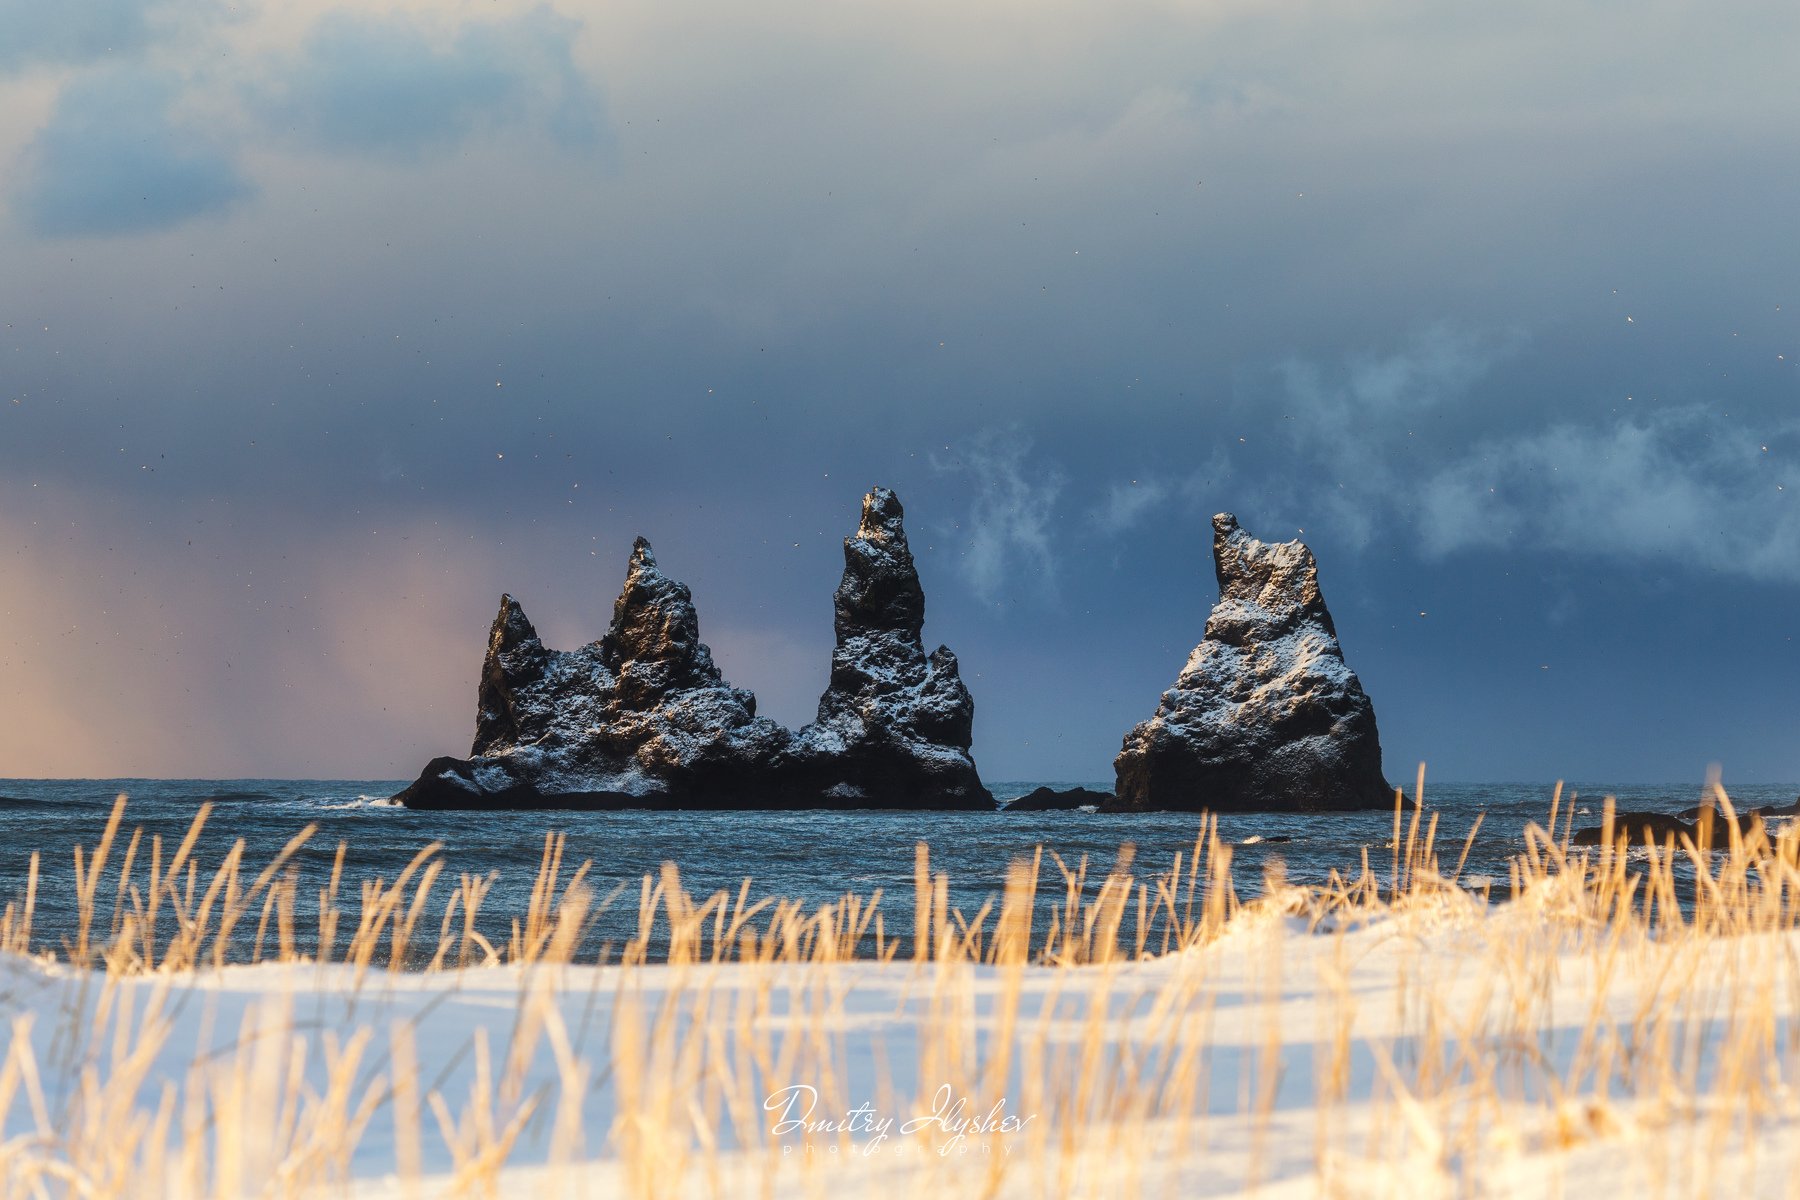 исландия, путешествия, скала пальцы тролля, шторм, зима, утро, рассвет, пейзаж, фототур, илышев дмитрий, Dmitry Ilyshev